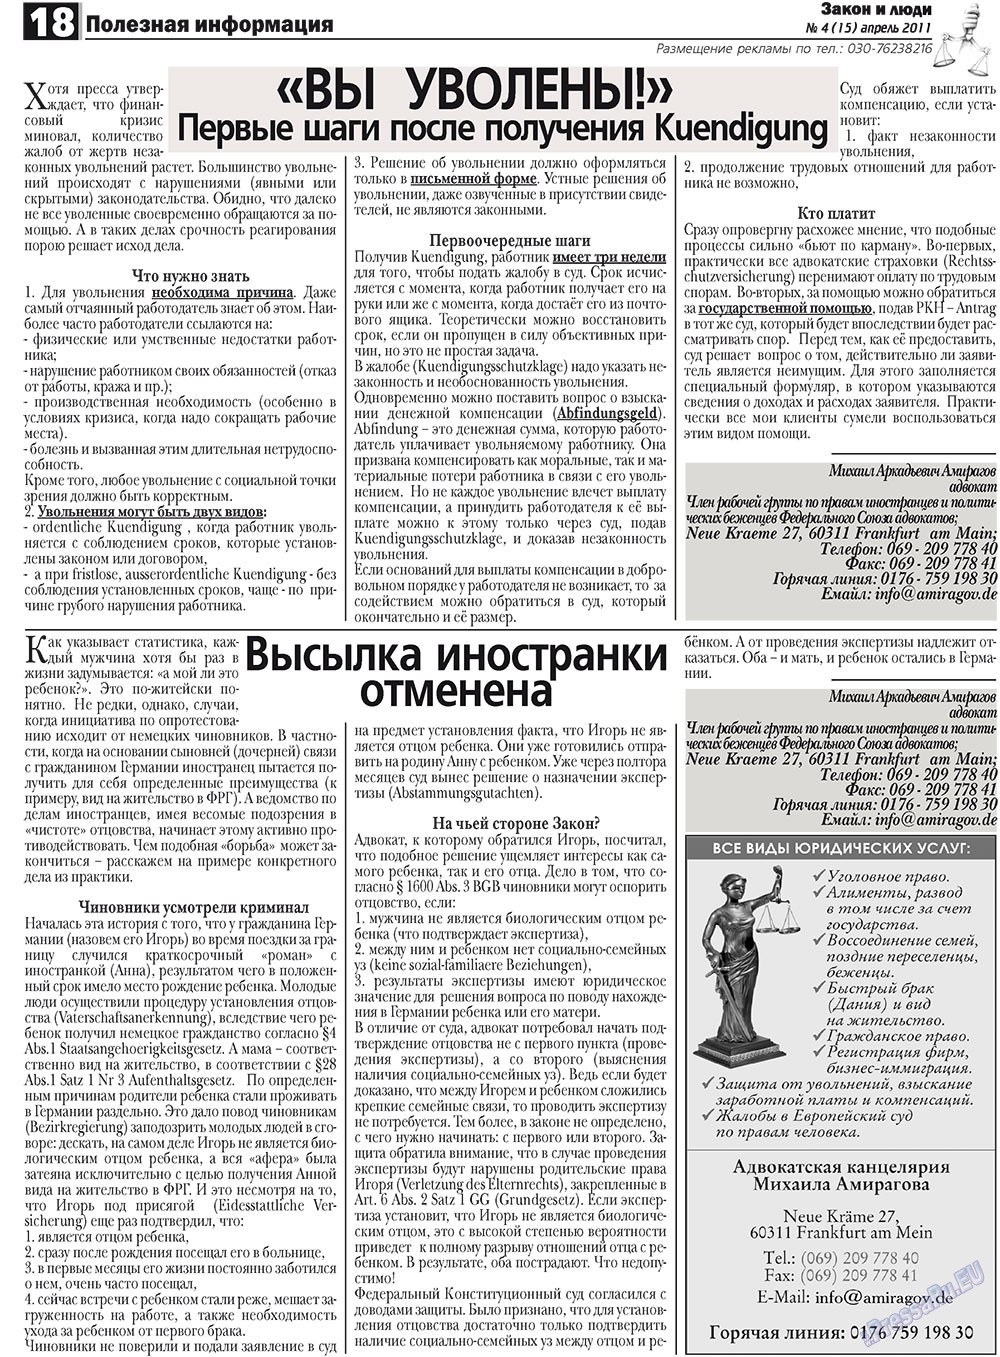 Закон и люди, газета. 2011 №4 стр.18